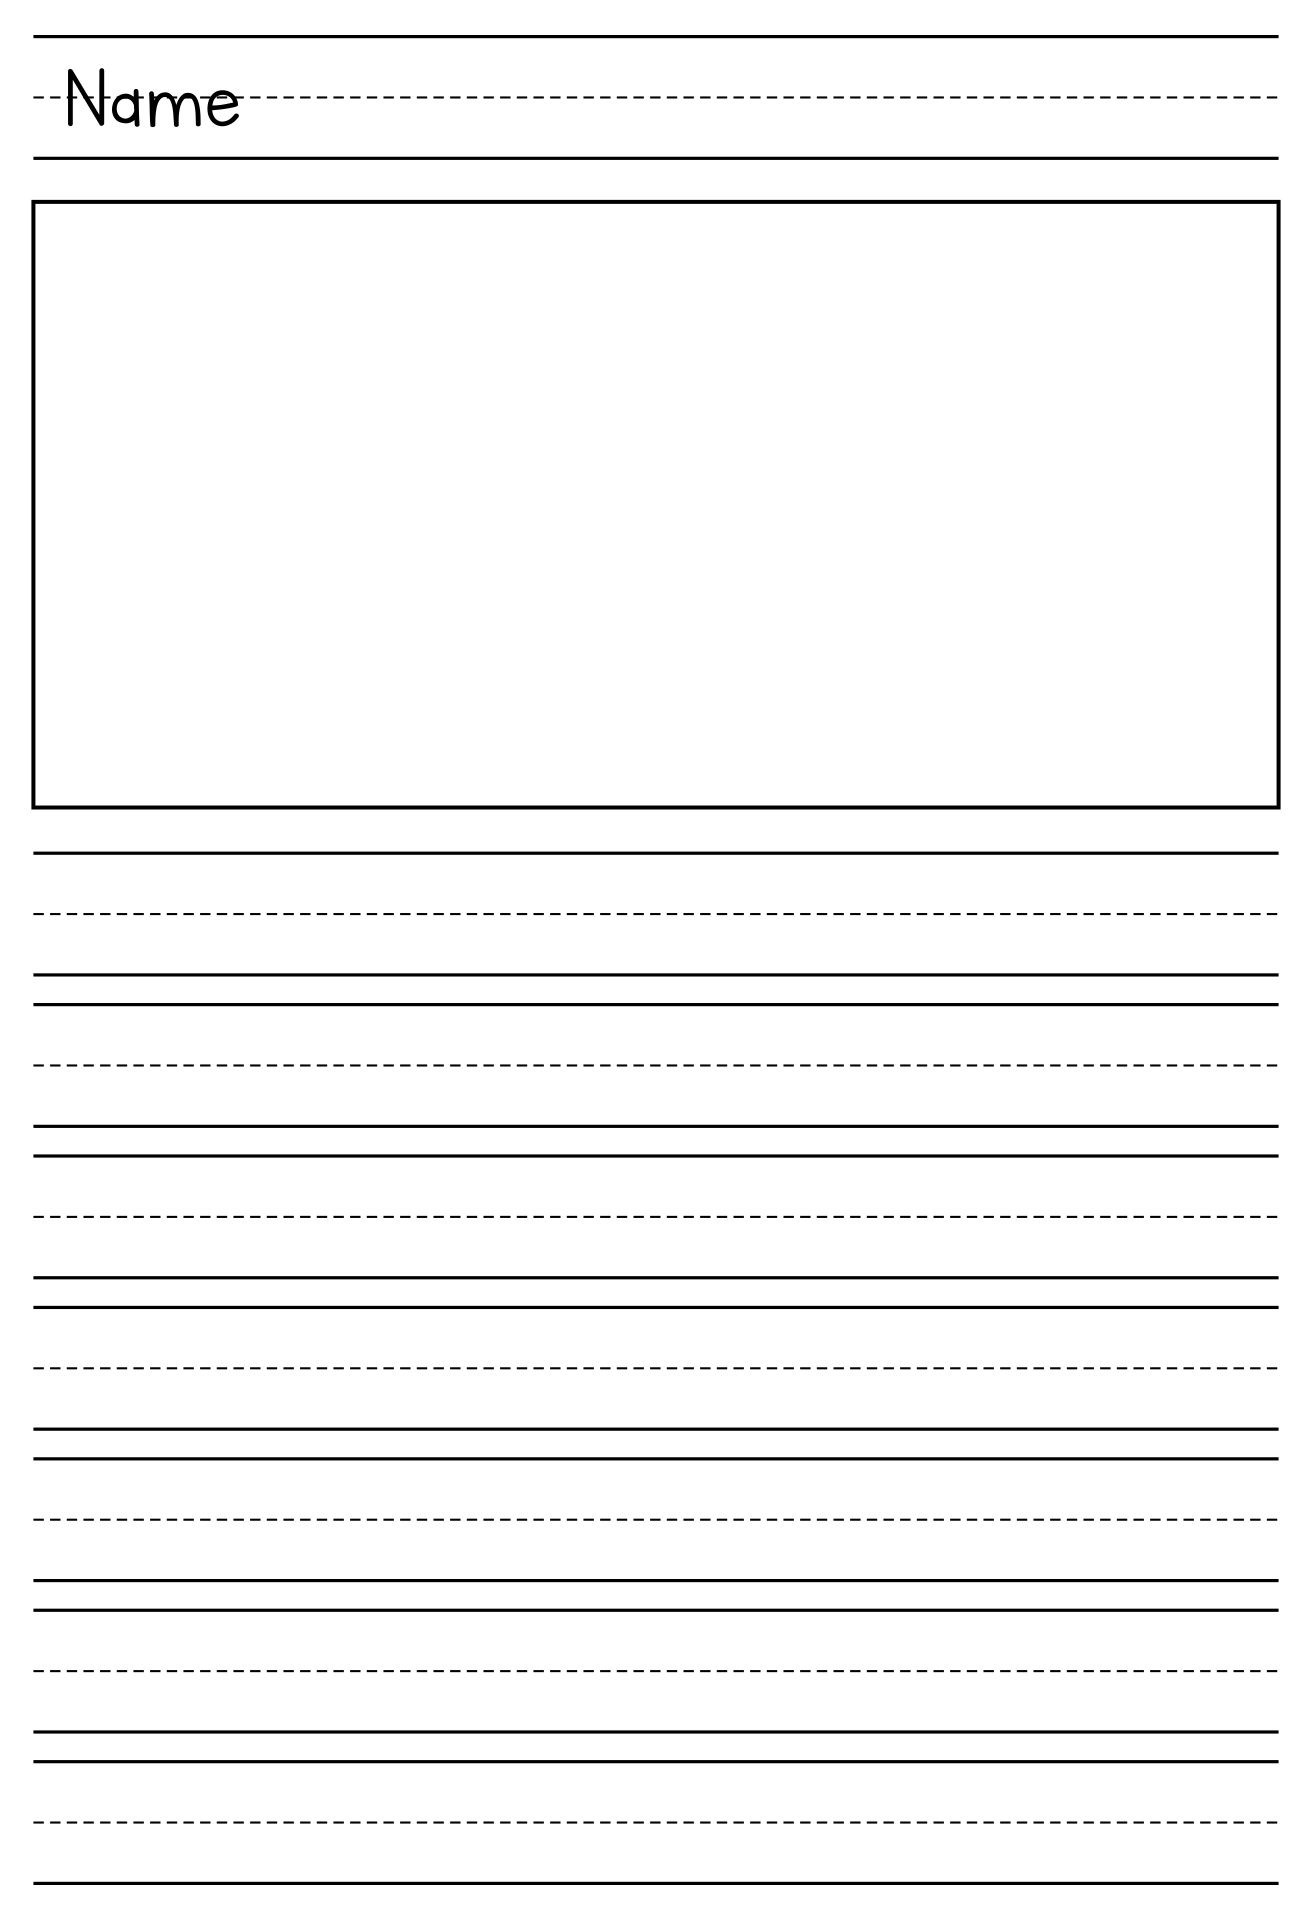 Printable Kindergarten Paper_93621